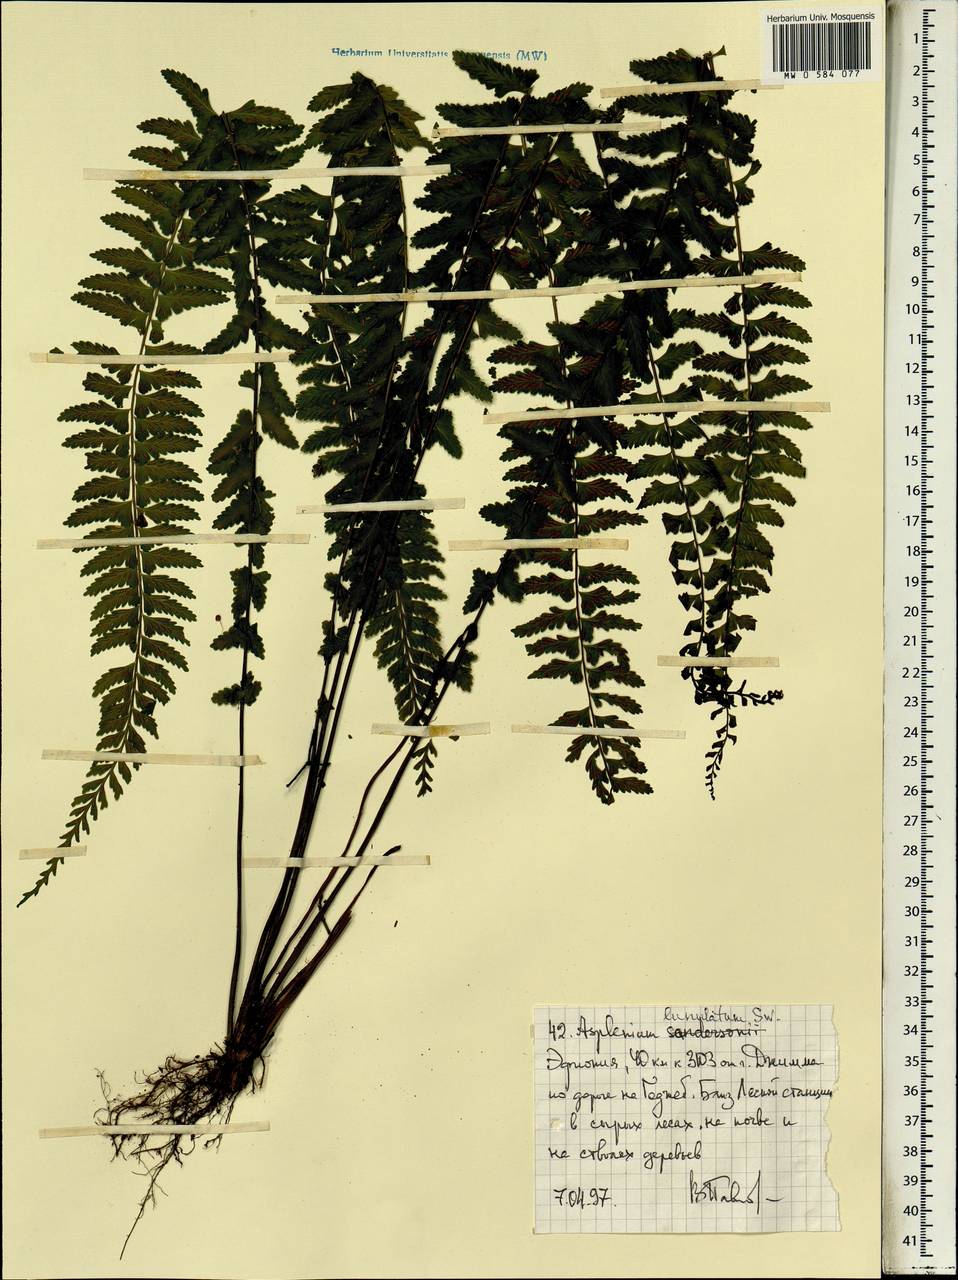 Asplenium lunulatum Sw., Africa (AFR) (Ethiopia)